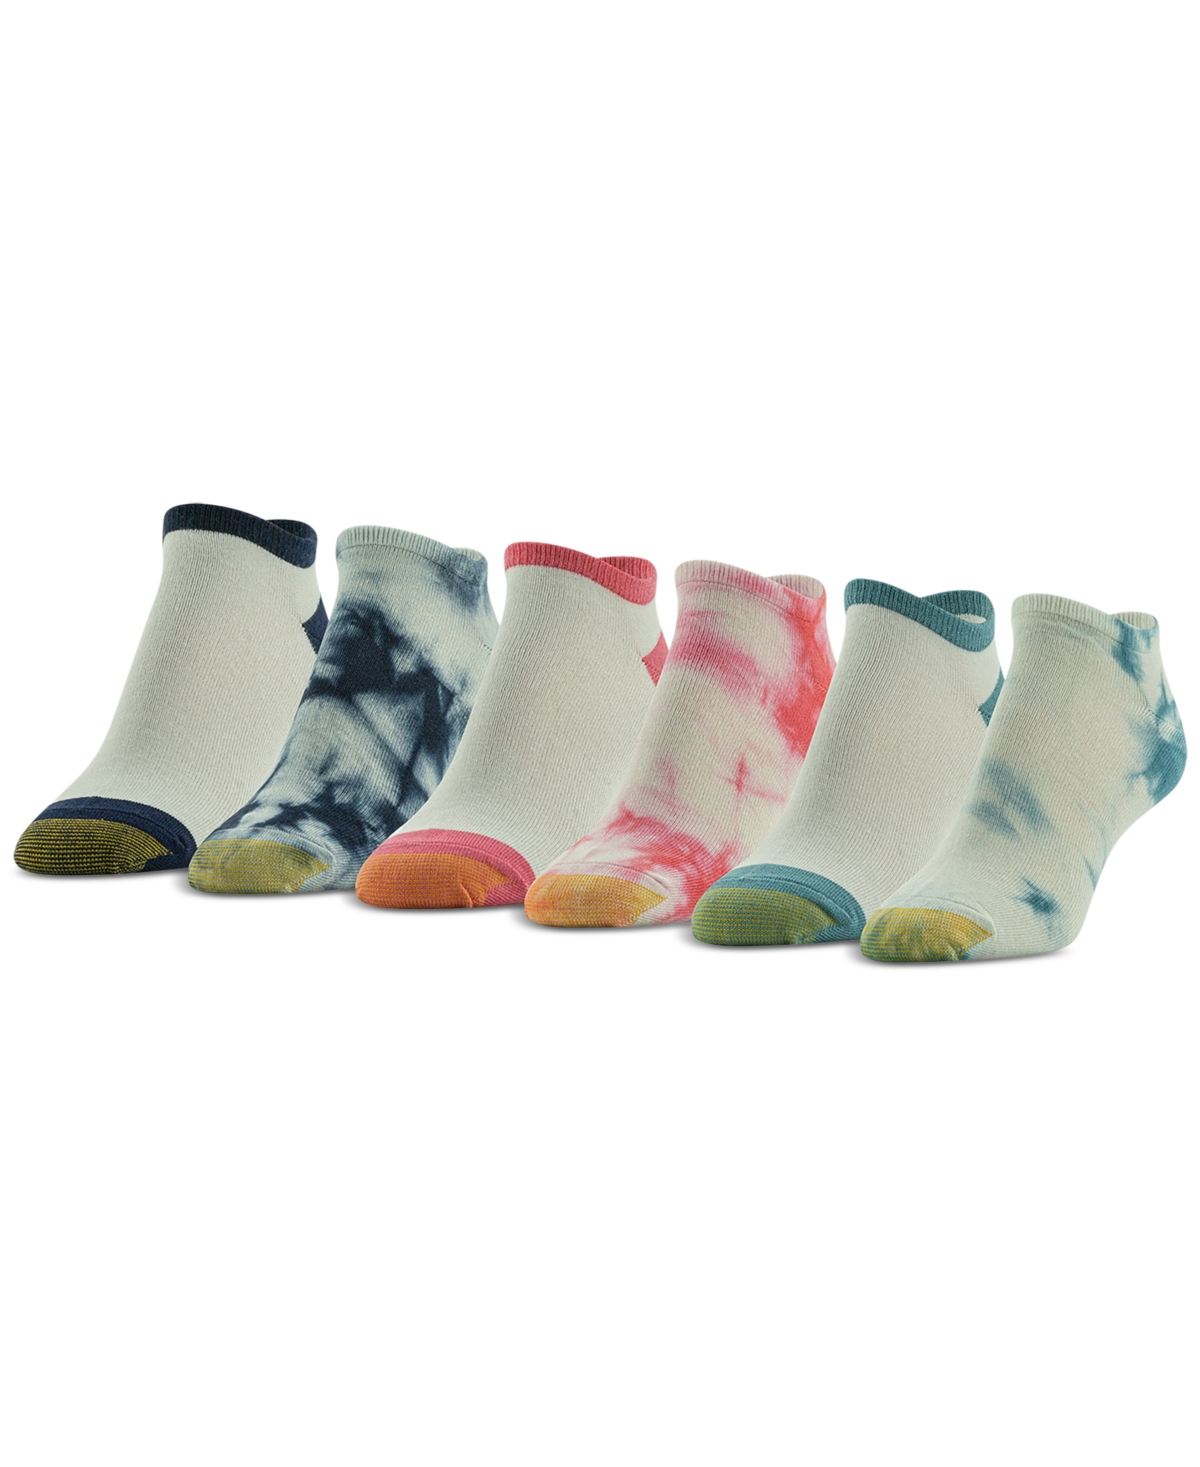 Women's 6-Pk. Tie-Dyed Liner Socks - Assorted